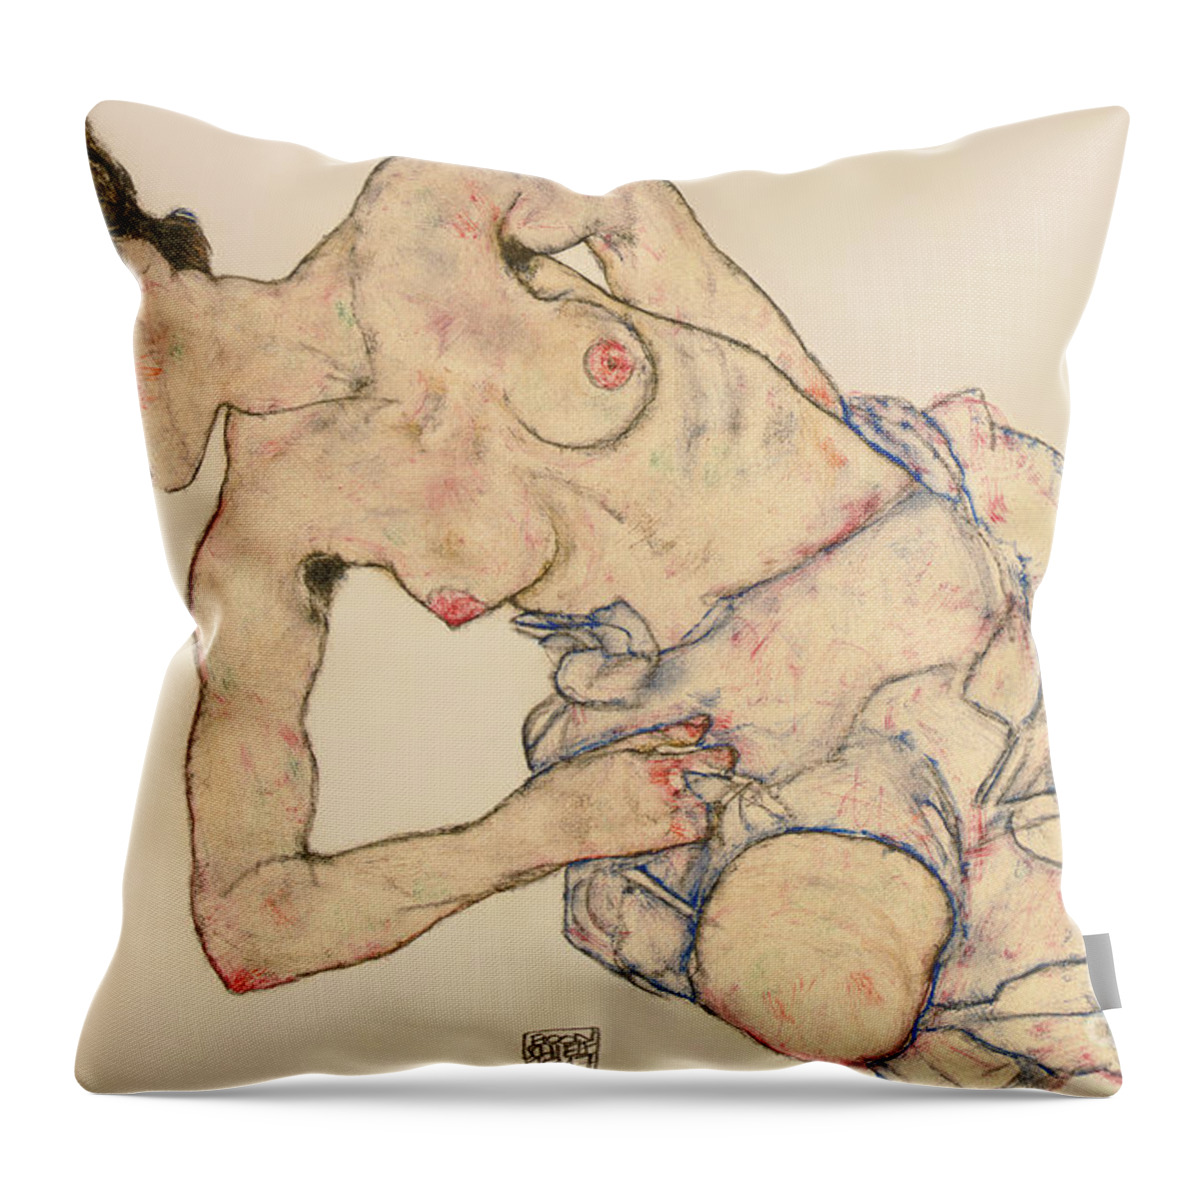 Kneider Weiblicher Halbakt Throw Pillow featuring the drawing Kneider weiblicher halbakt by Egon Schiele